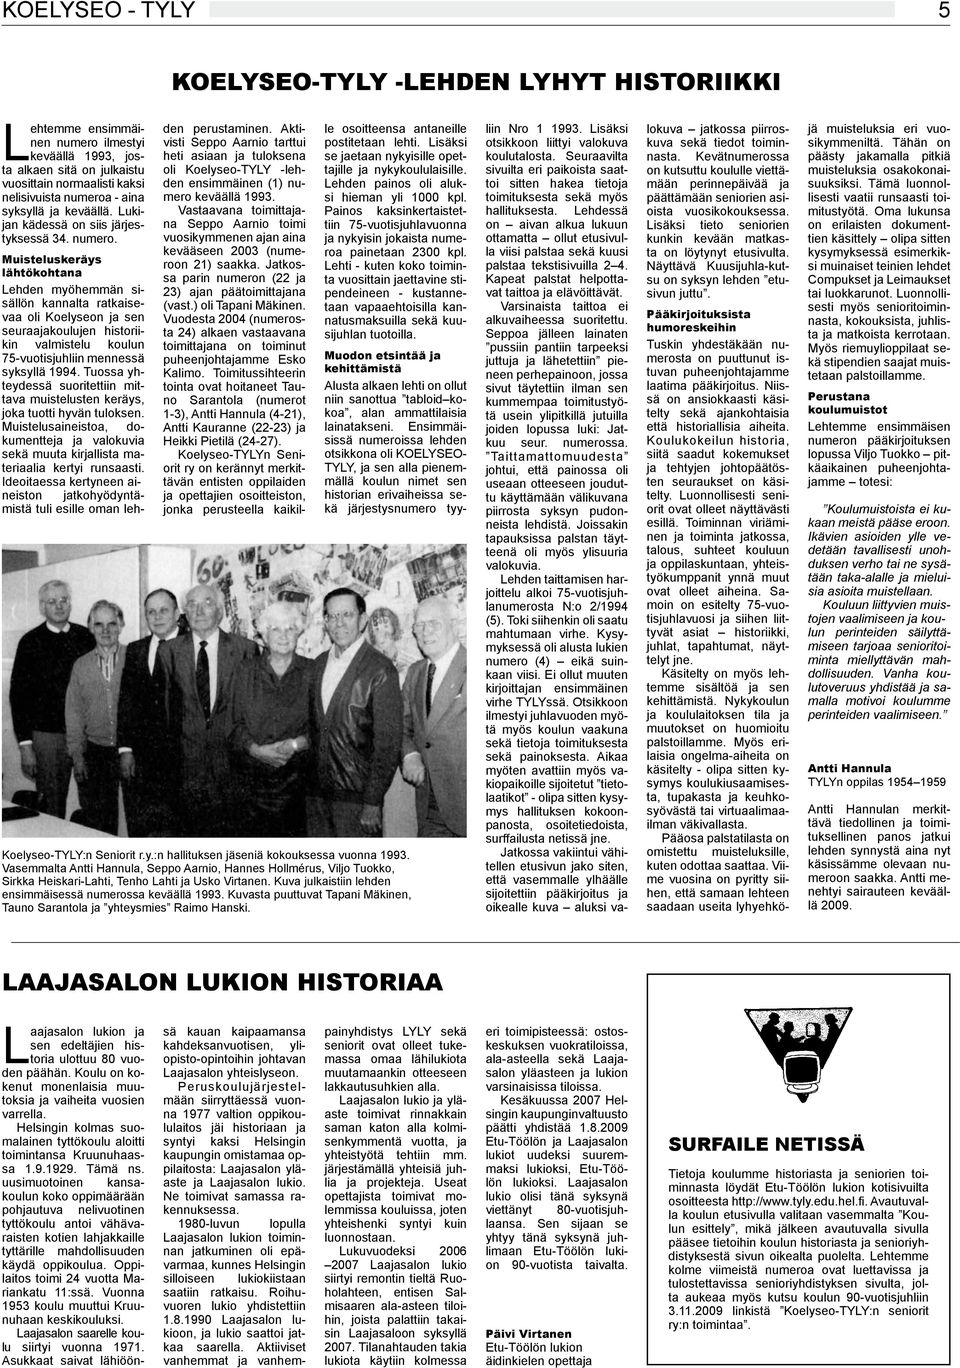 Muisteluskeräys lähtökohtana Lehden myöhemmän sisällön kannalta ratkaisevaa oli Koelyseon ja sen seuraajakoulujen historiikin valmistelu koulun 75-vuotisjuhliin mennessä syksyllä 1994.